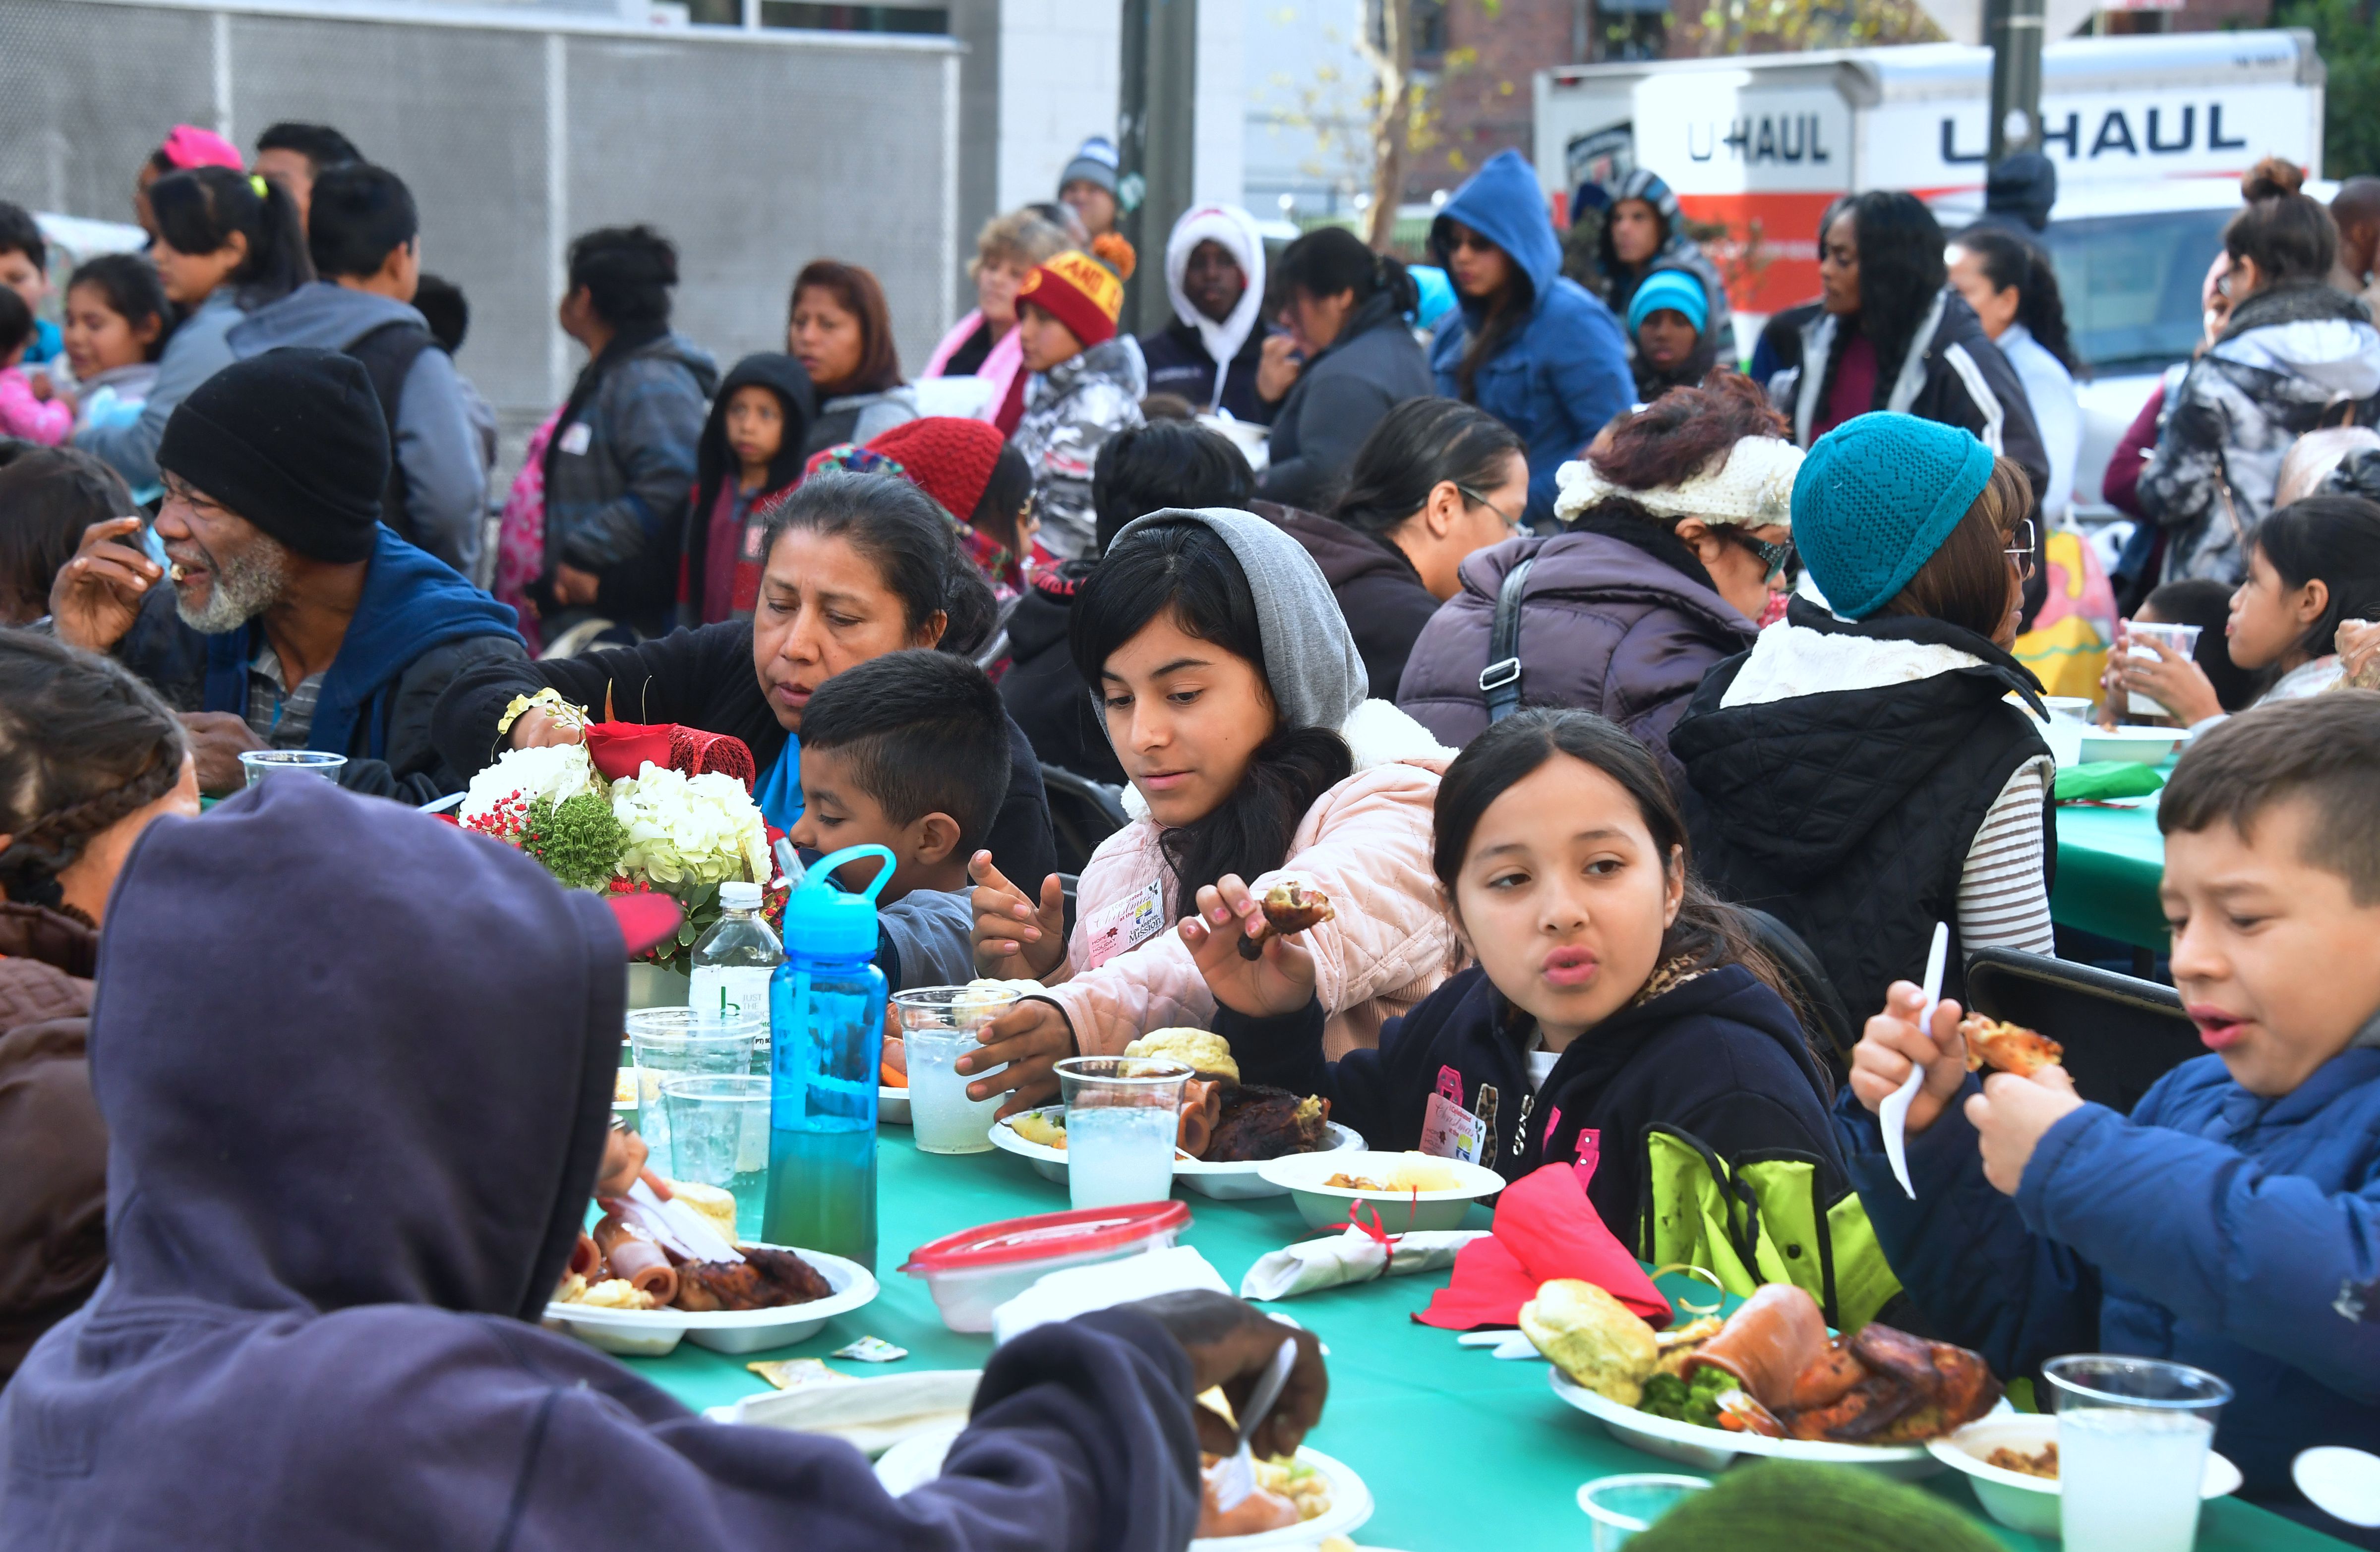 لوس أنجلوس تطعم المشردين بمناسبة احتفالات راس السنة